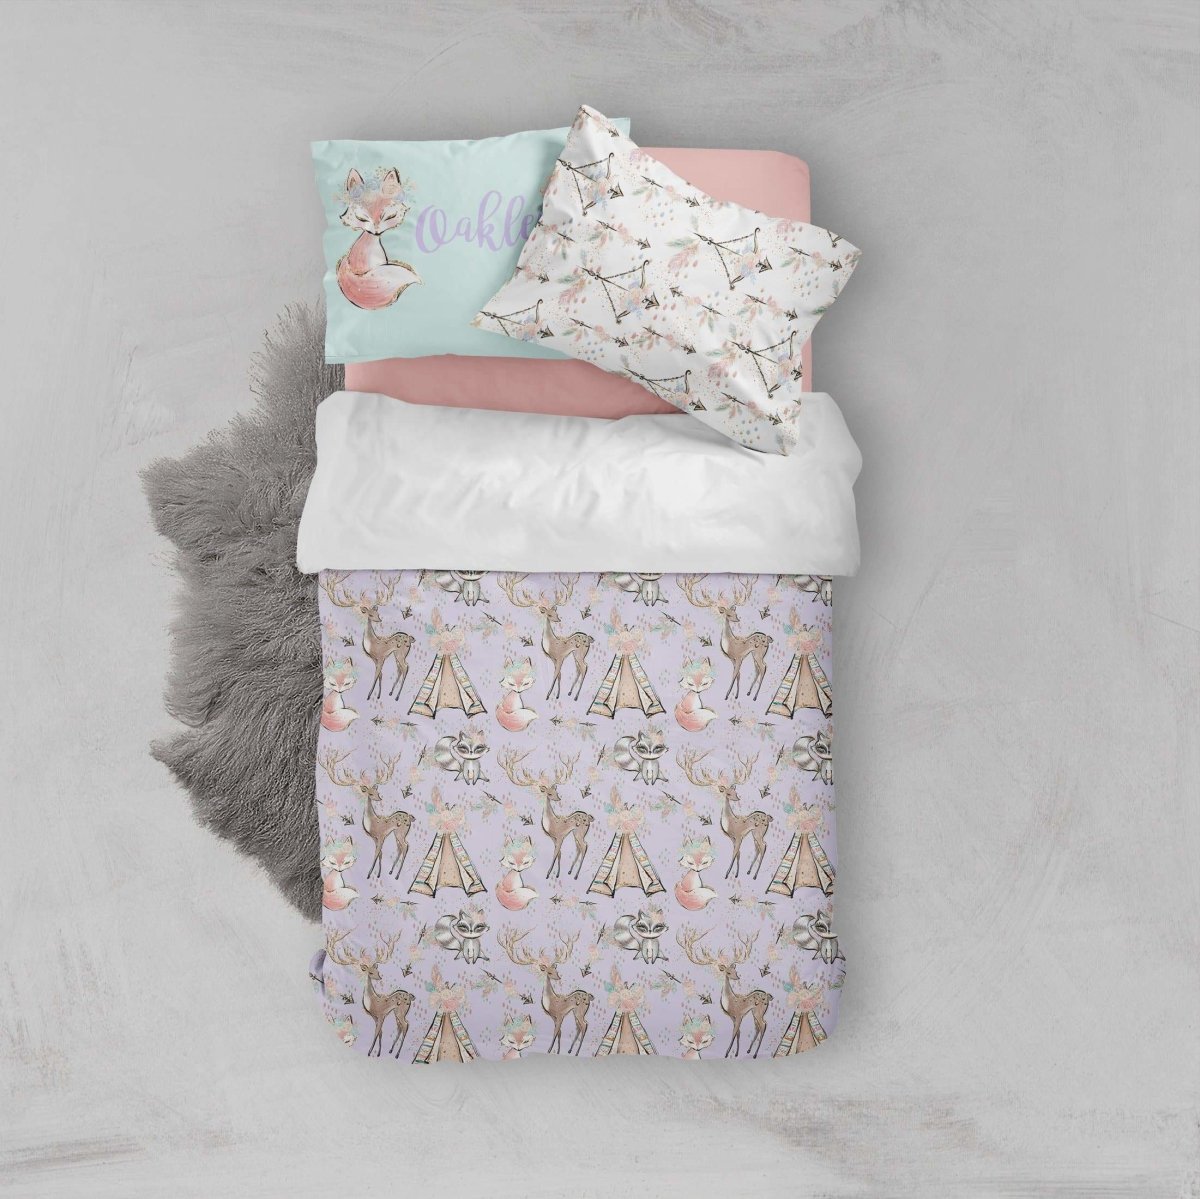 Woodland Boho Kids Bedding Set (Comforter or Duvet Cover) - text, ,